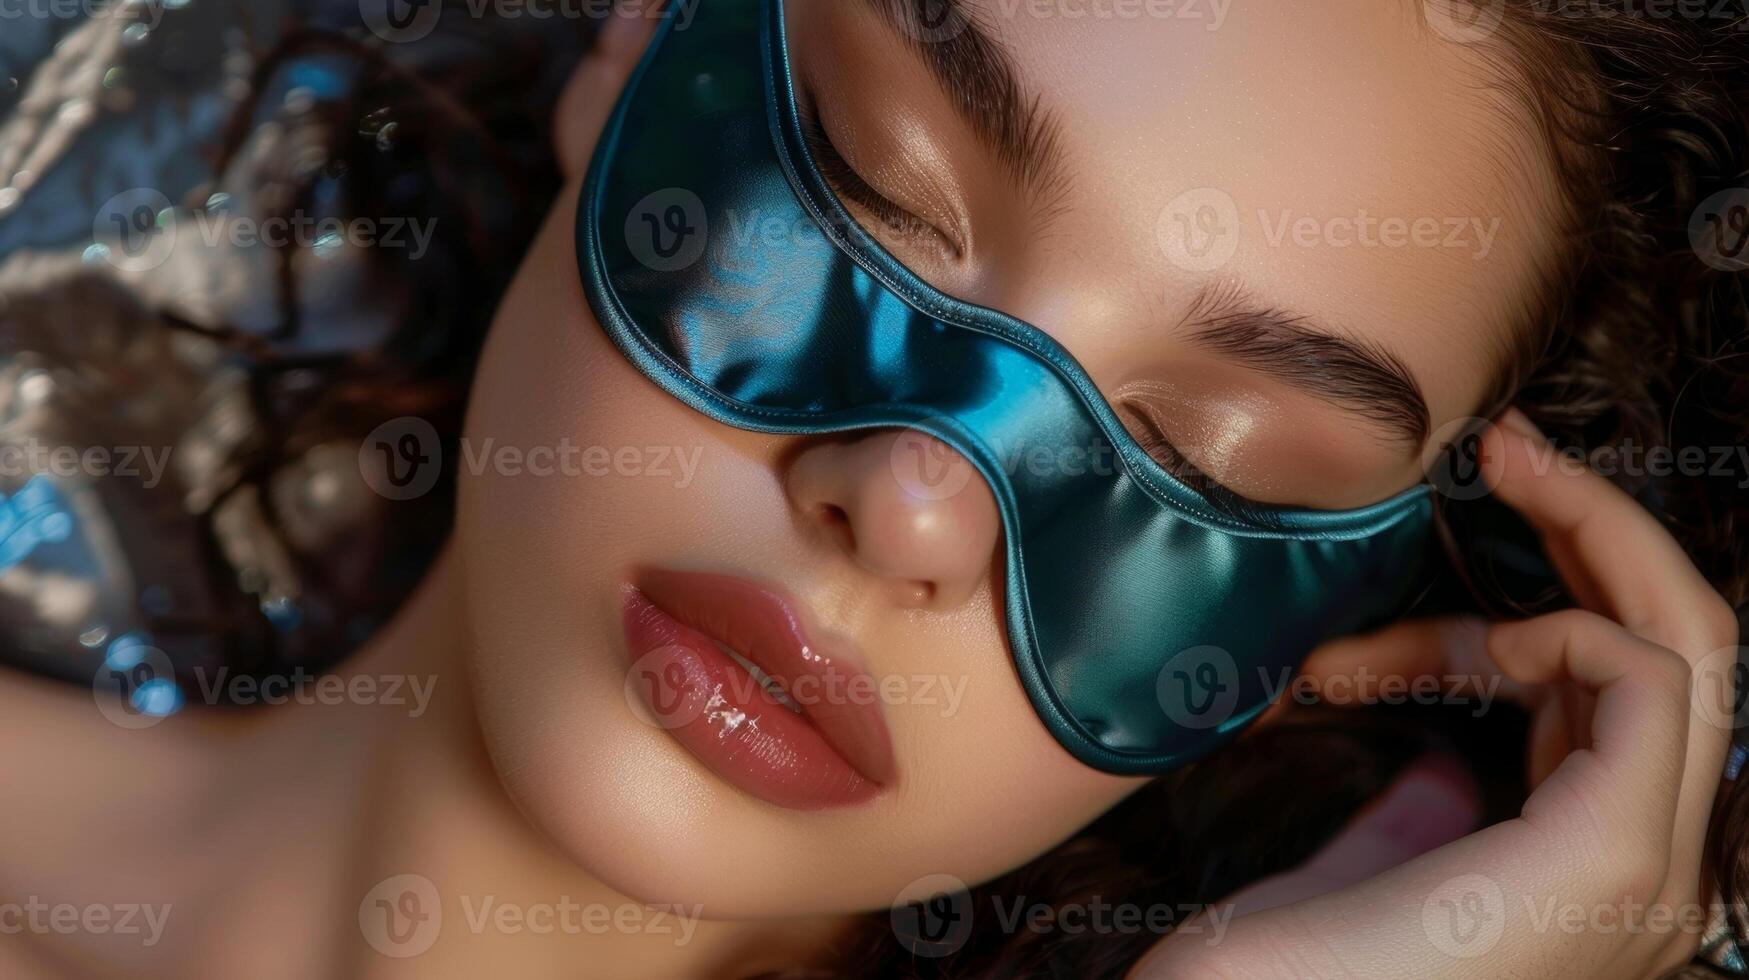 un lujoso satín dormir máscara disponible en un formación de maravilloso joya tonos agregando un toque de glamour a tu nocturno rutina foto